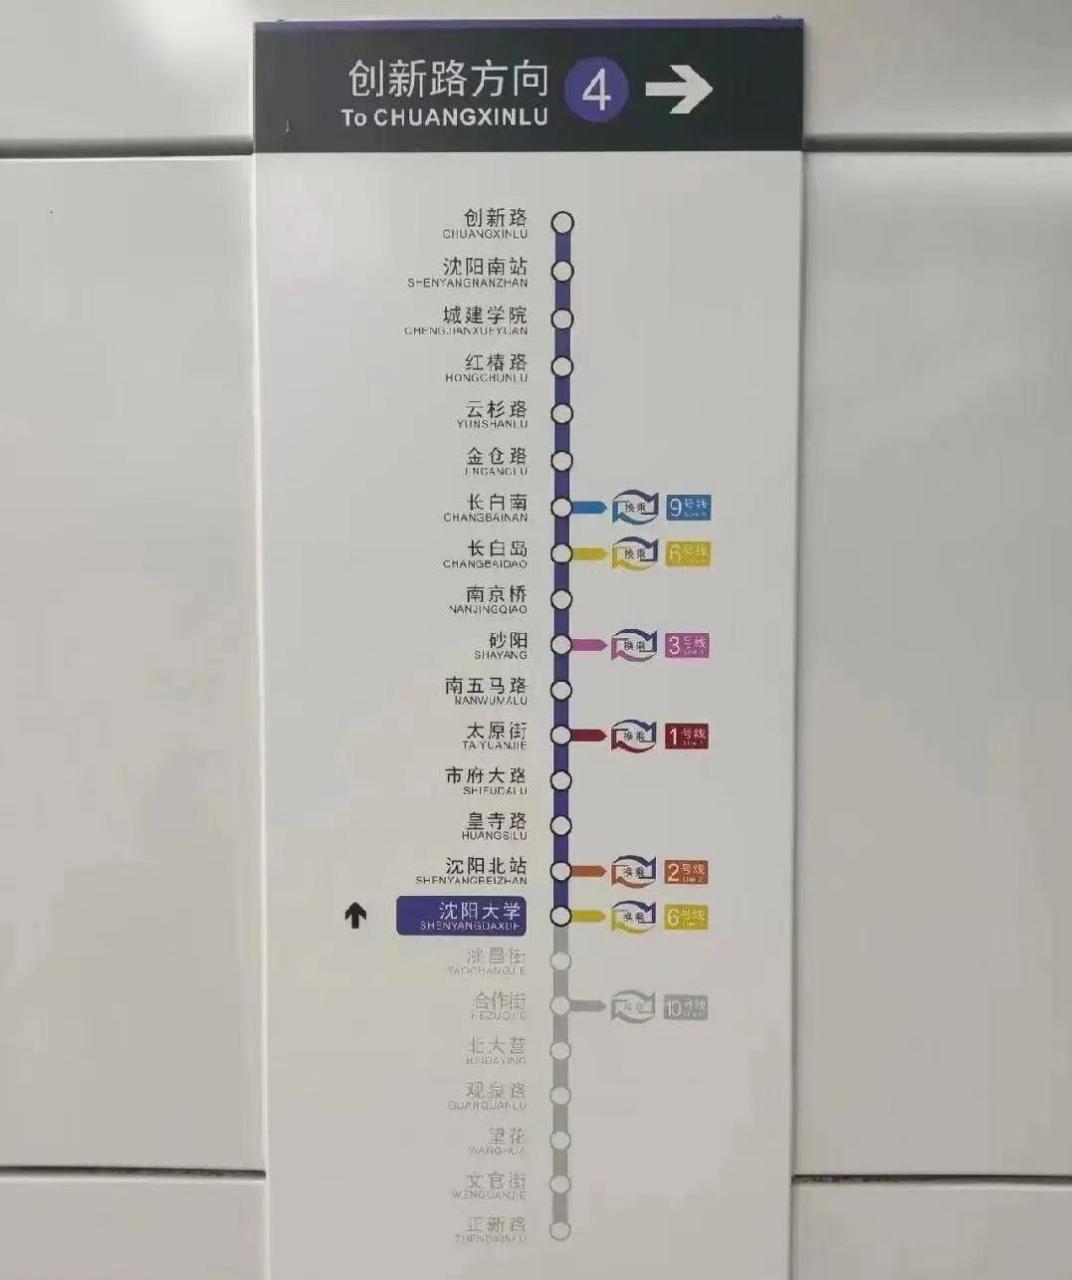 沈阳地铁4号线的站点非常漂亮,从创新路到正新路,从北到南的一条大